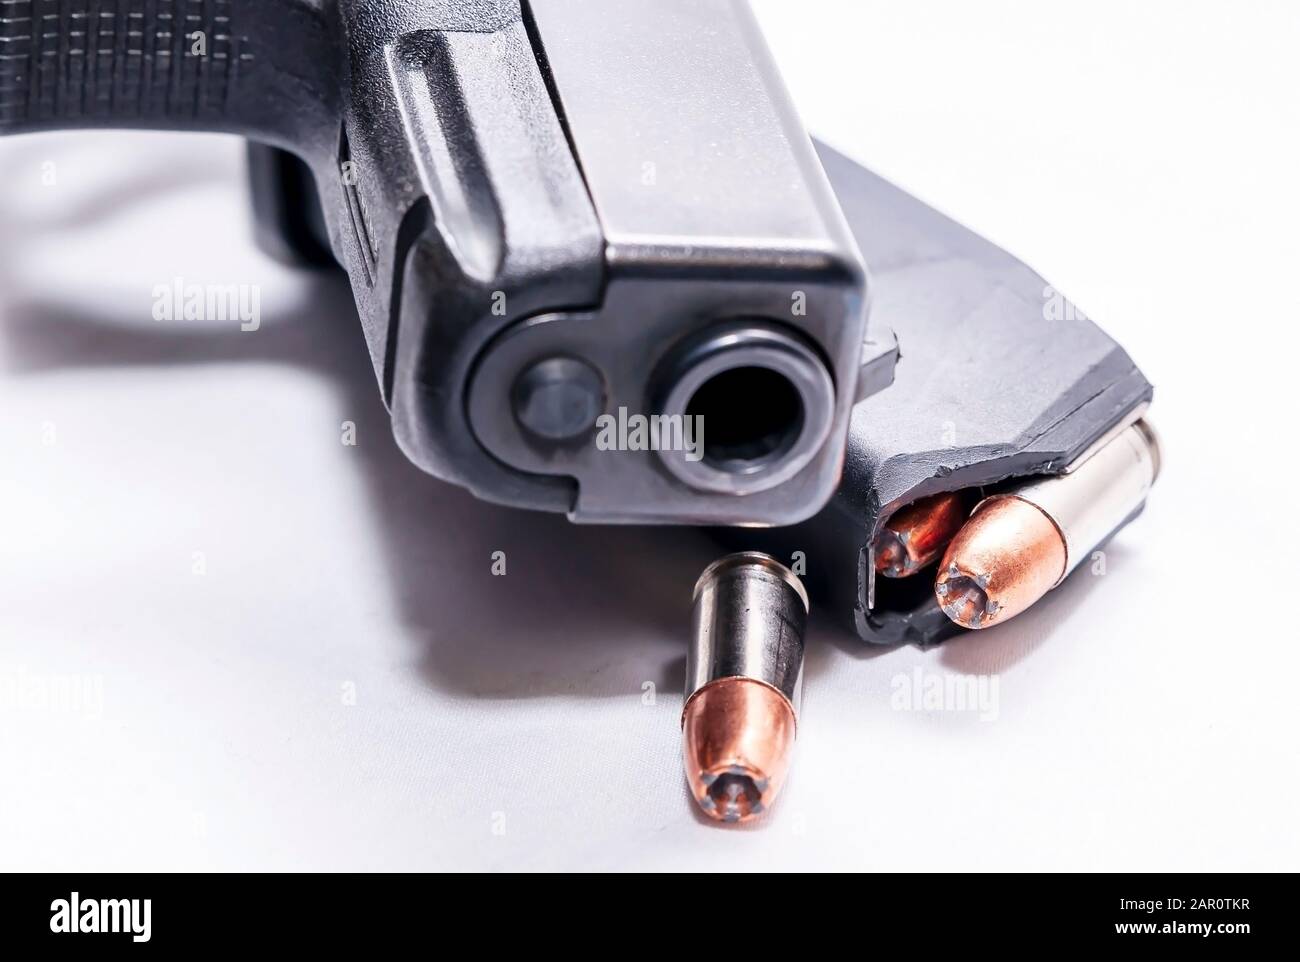 Una pistola semi-automatica 9mm nera con caricatore a pistola caricato con un unico proiettile a punta cava 9mm su sfondo bianco Foto Stock